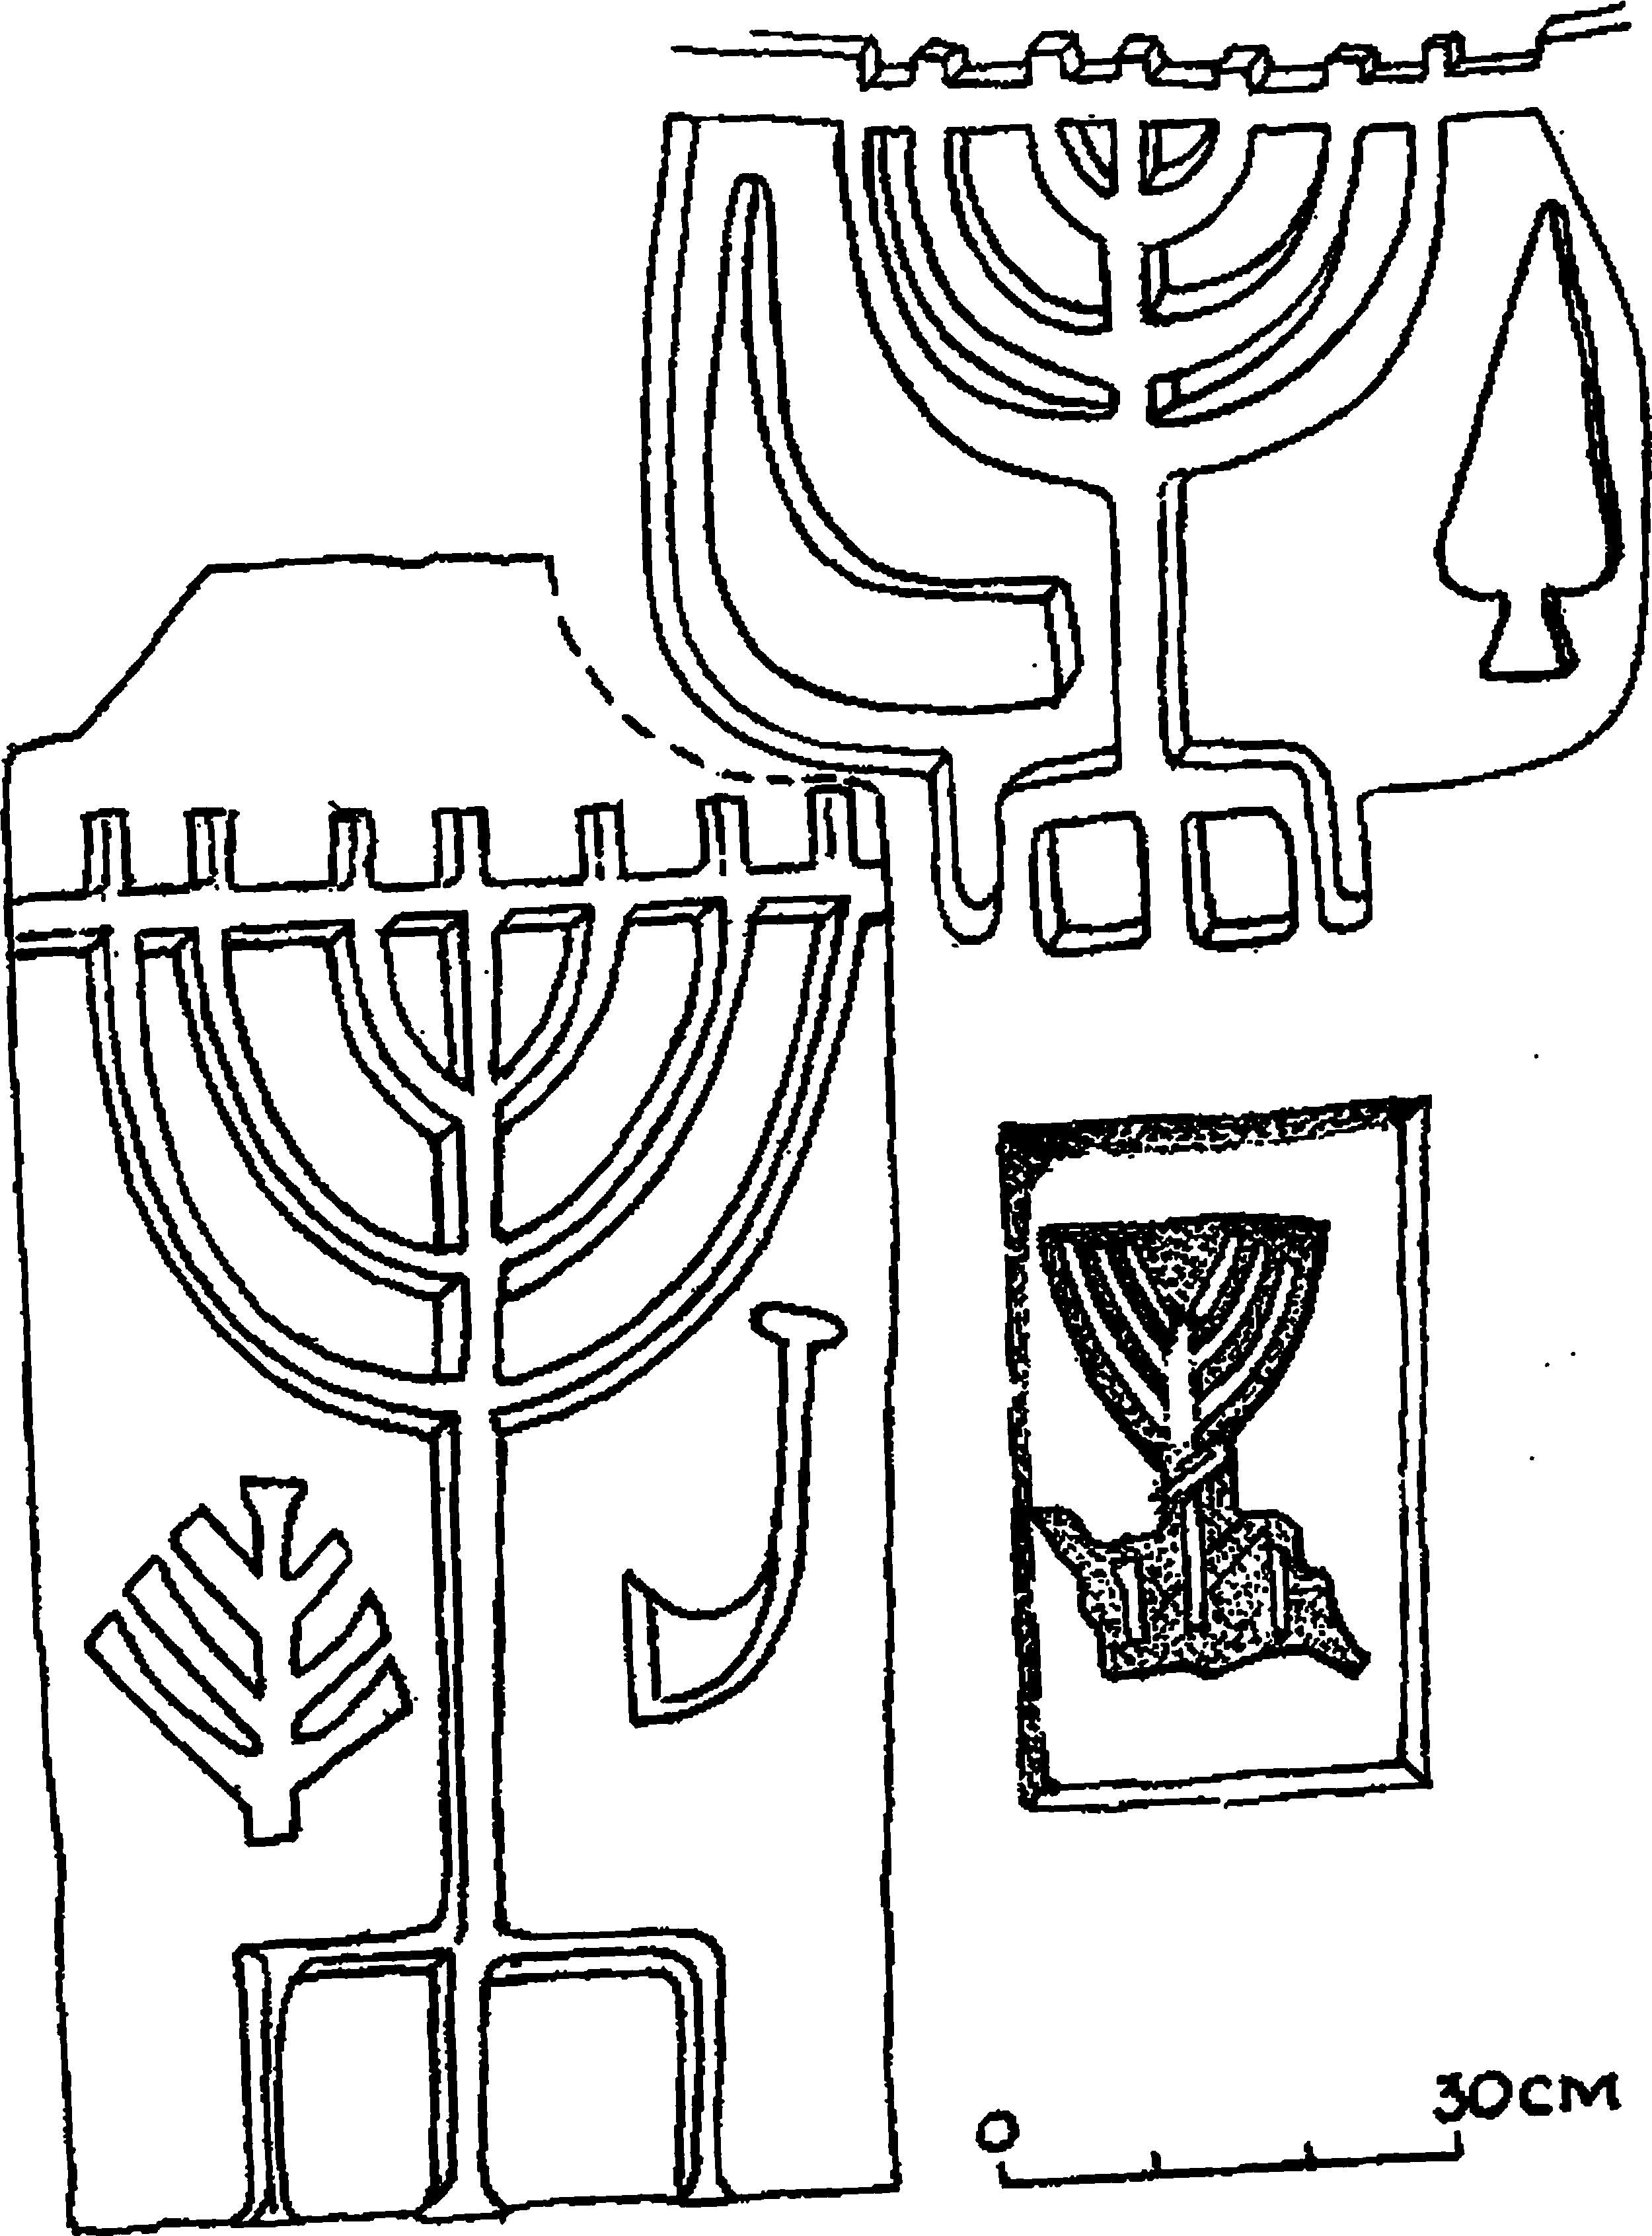 Рис 105. иудейские надгробия, обнаруженные в окрестностях Керчи. Хранение Керченского музея